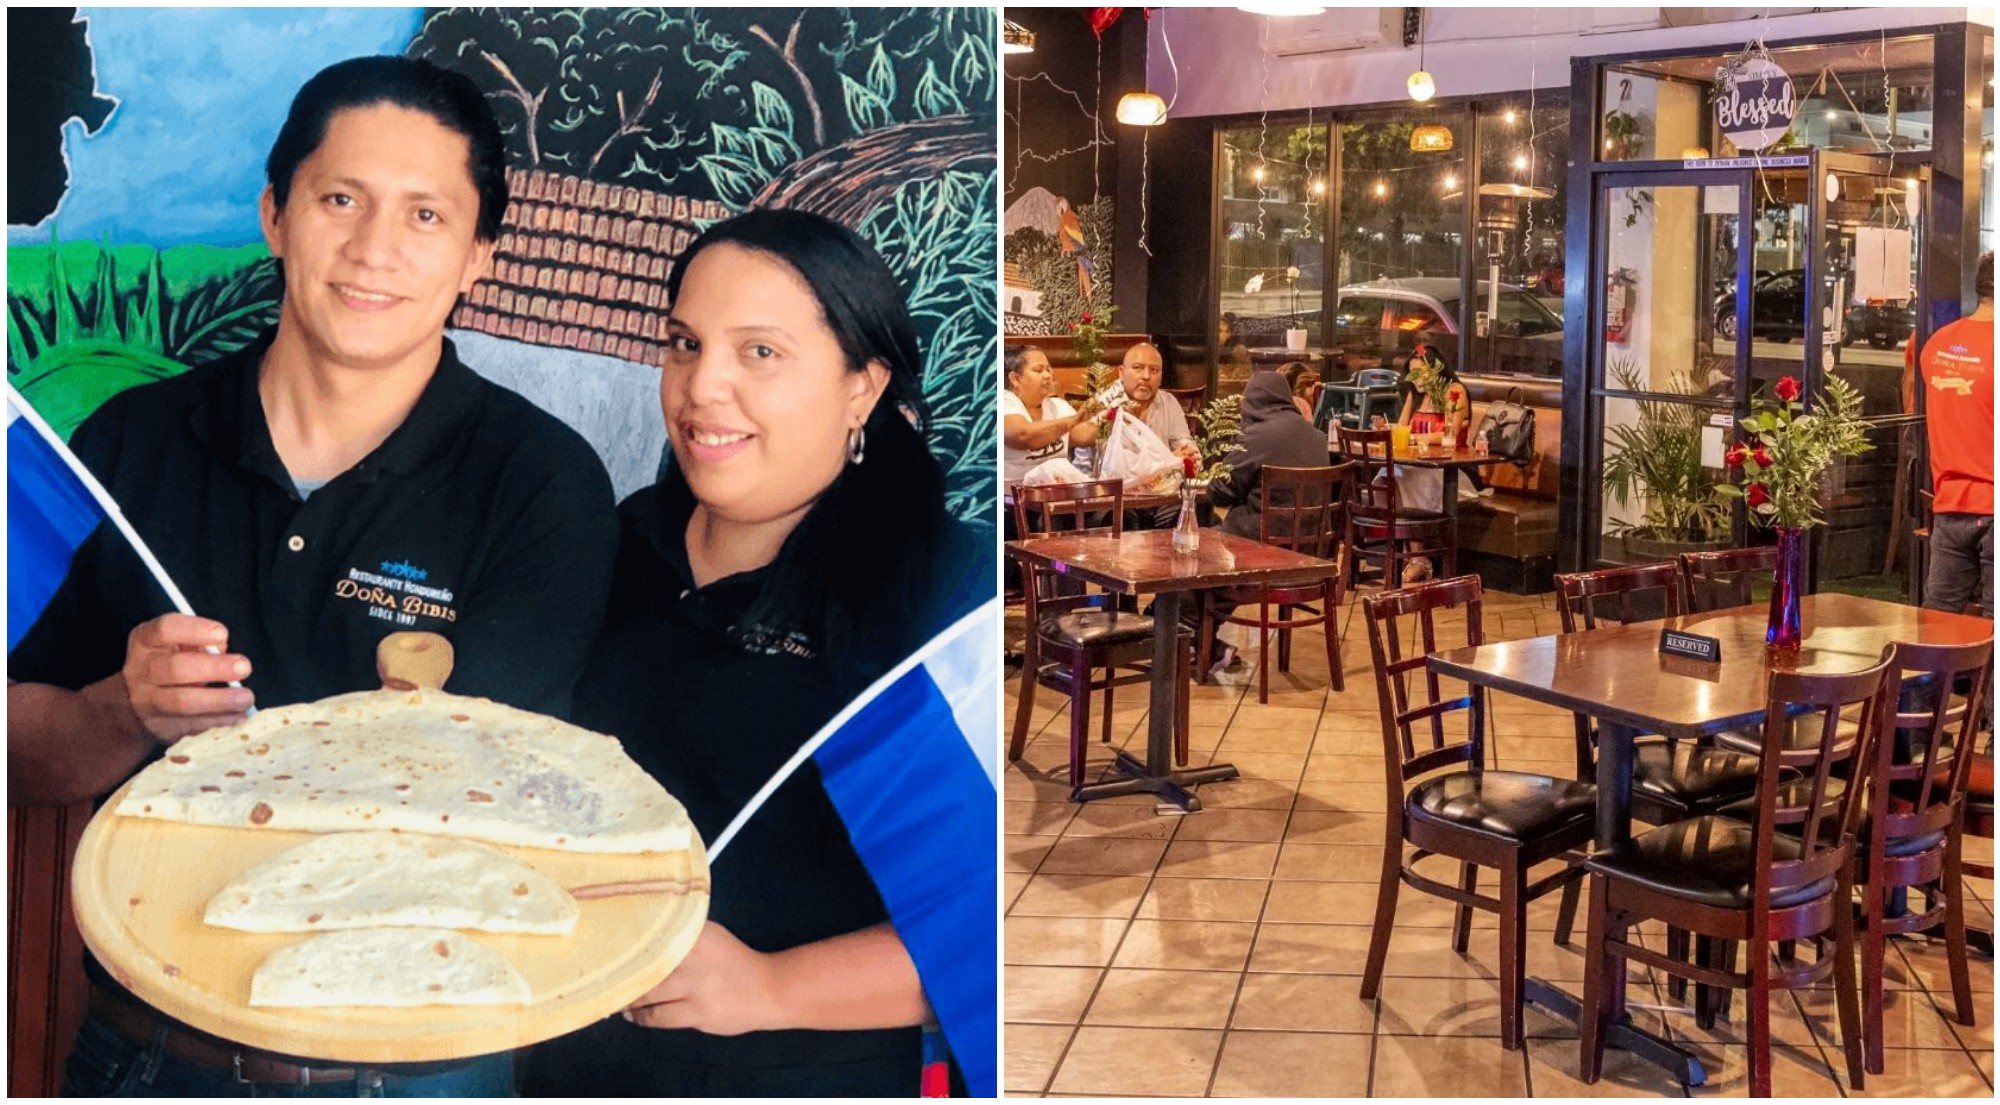 Hondureños triunfan con restaurante de comida catracha en Estados Unidos